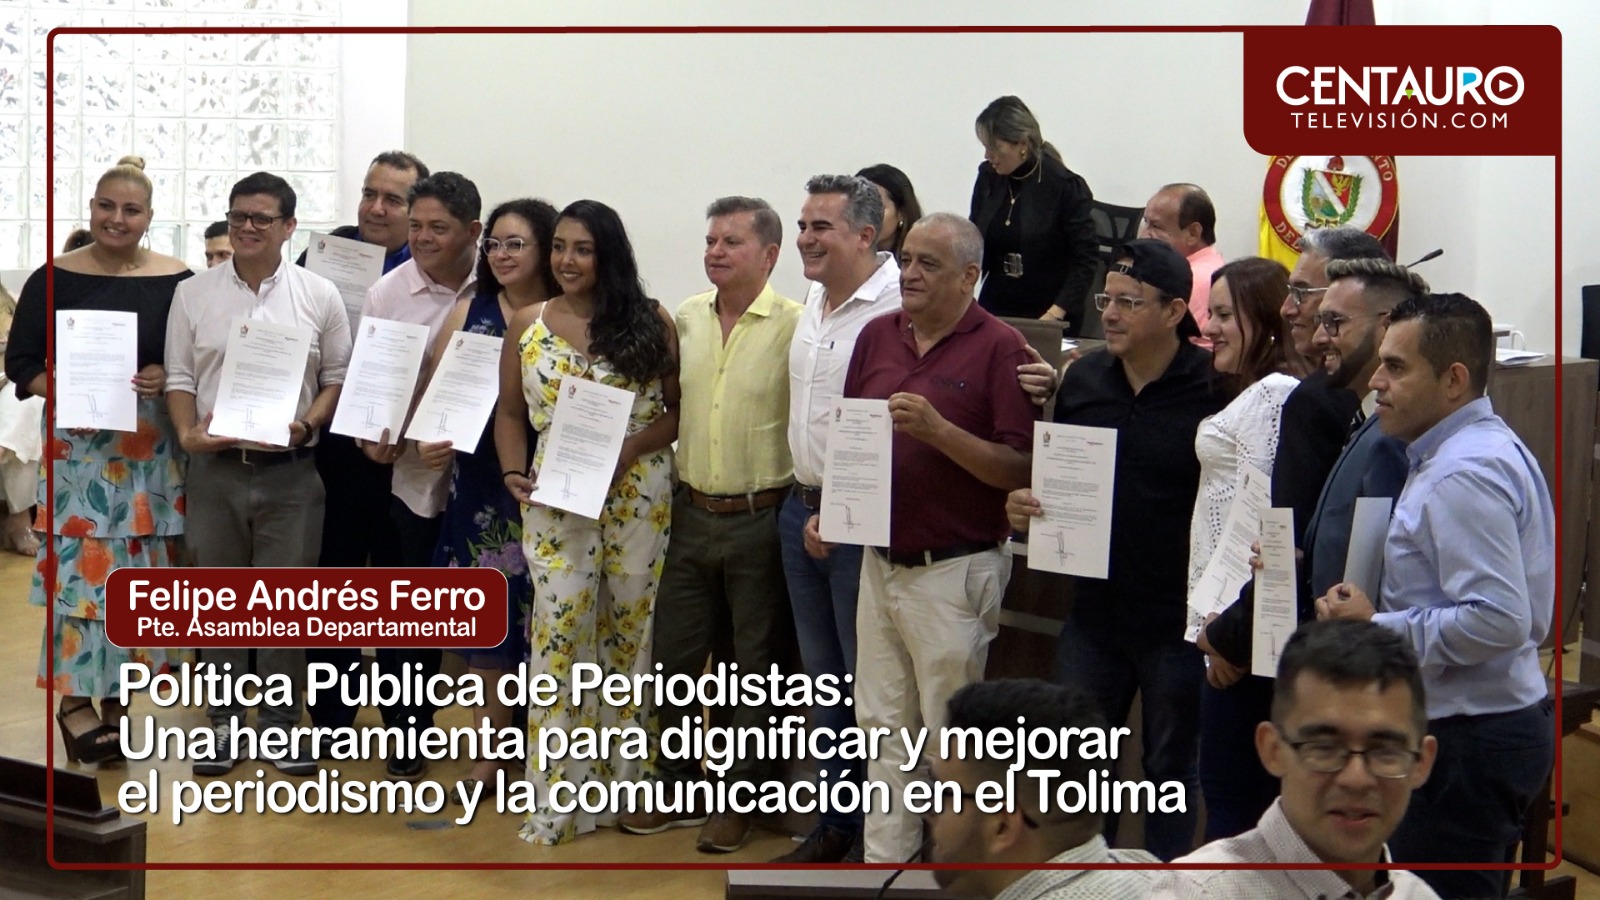 Política Pública de Periodistas: Una herramienta para dignificar y mejorar el periodismo y la comunicación en el Tolima